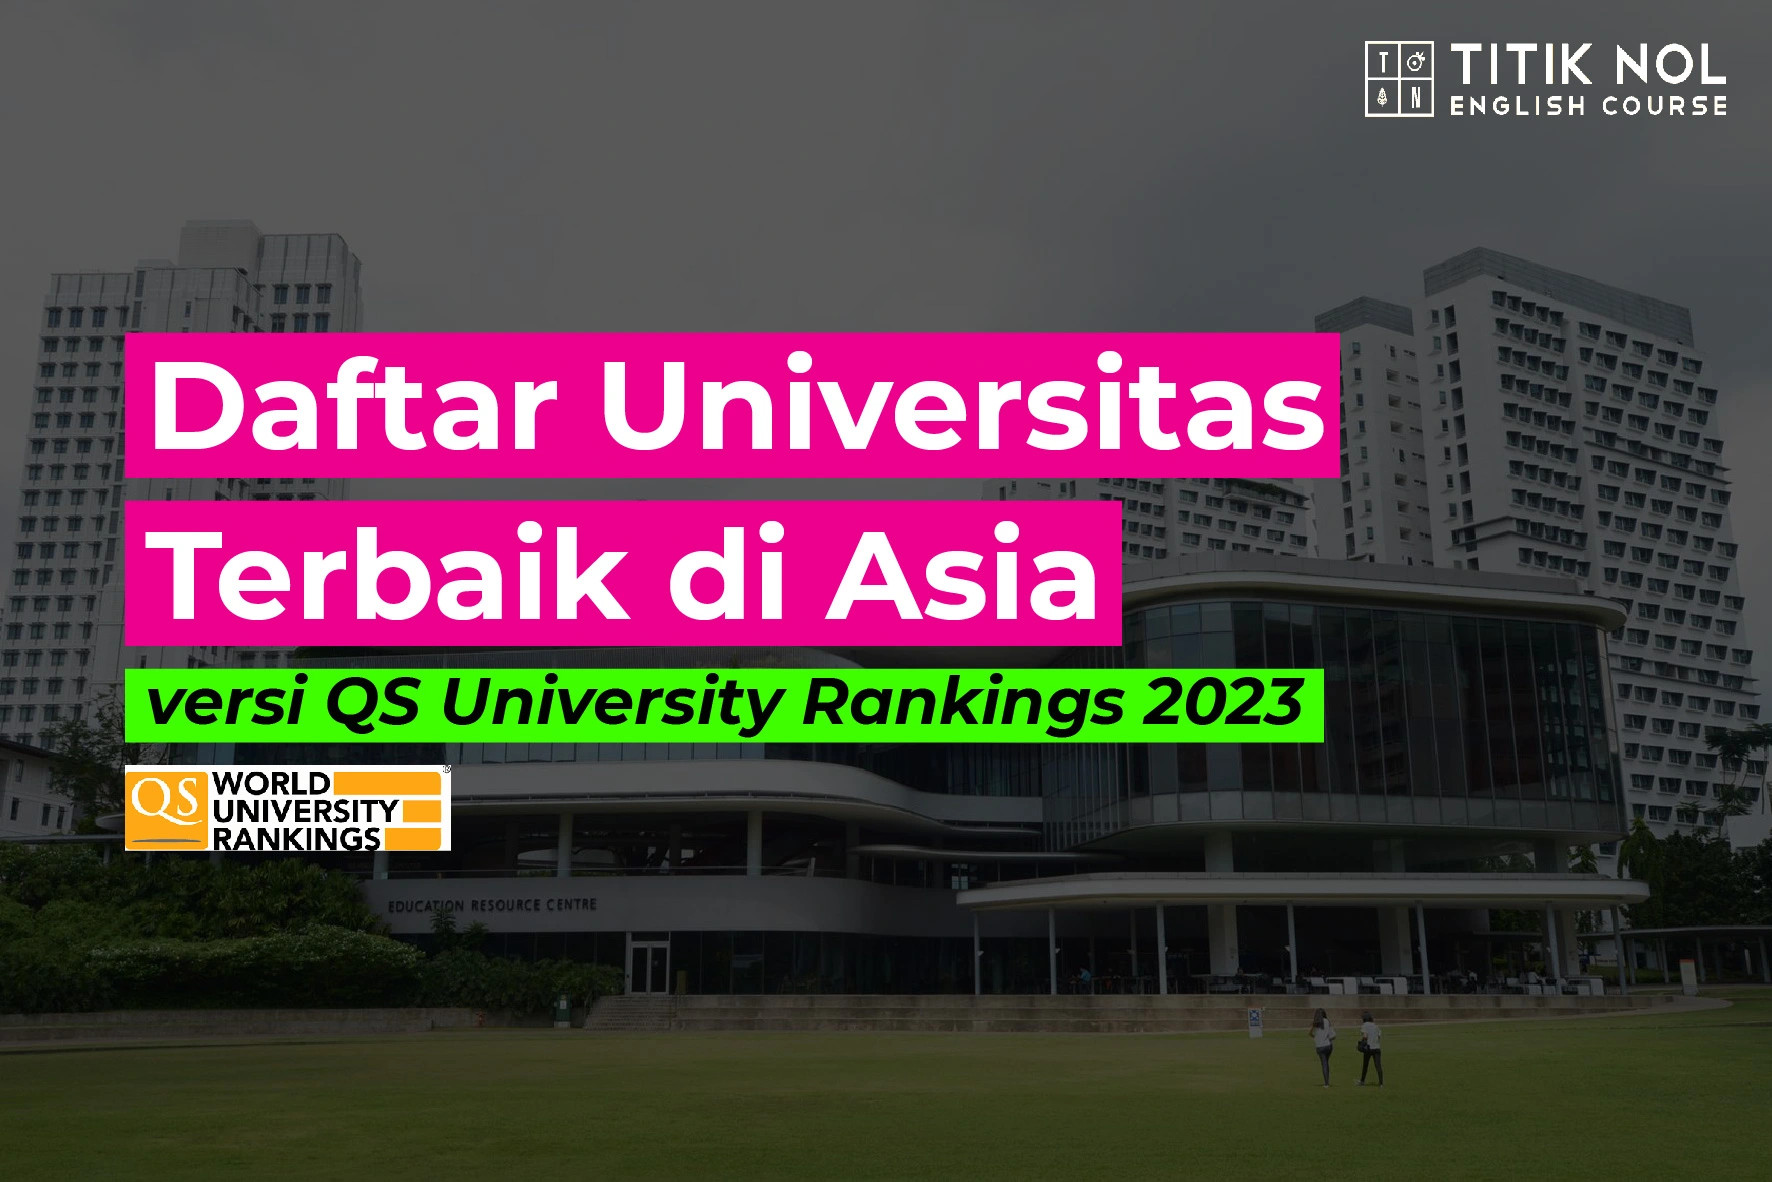 Daftar-Universitas-Terbaik-di-Asia-2023